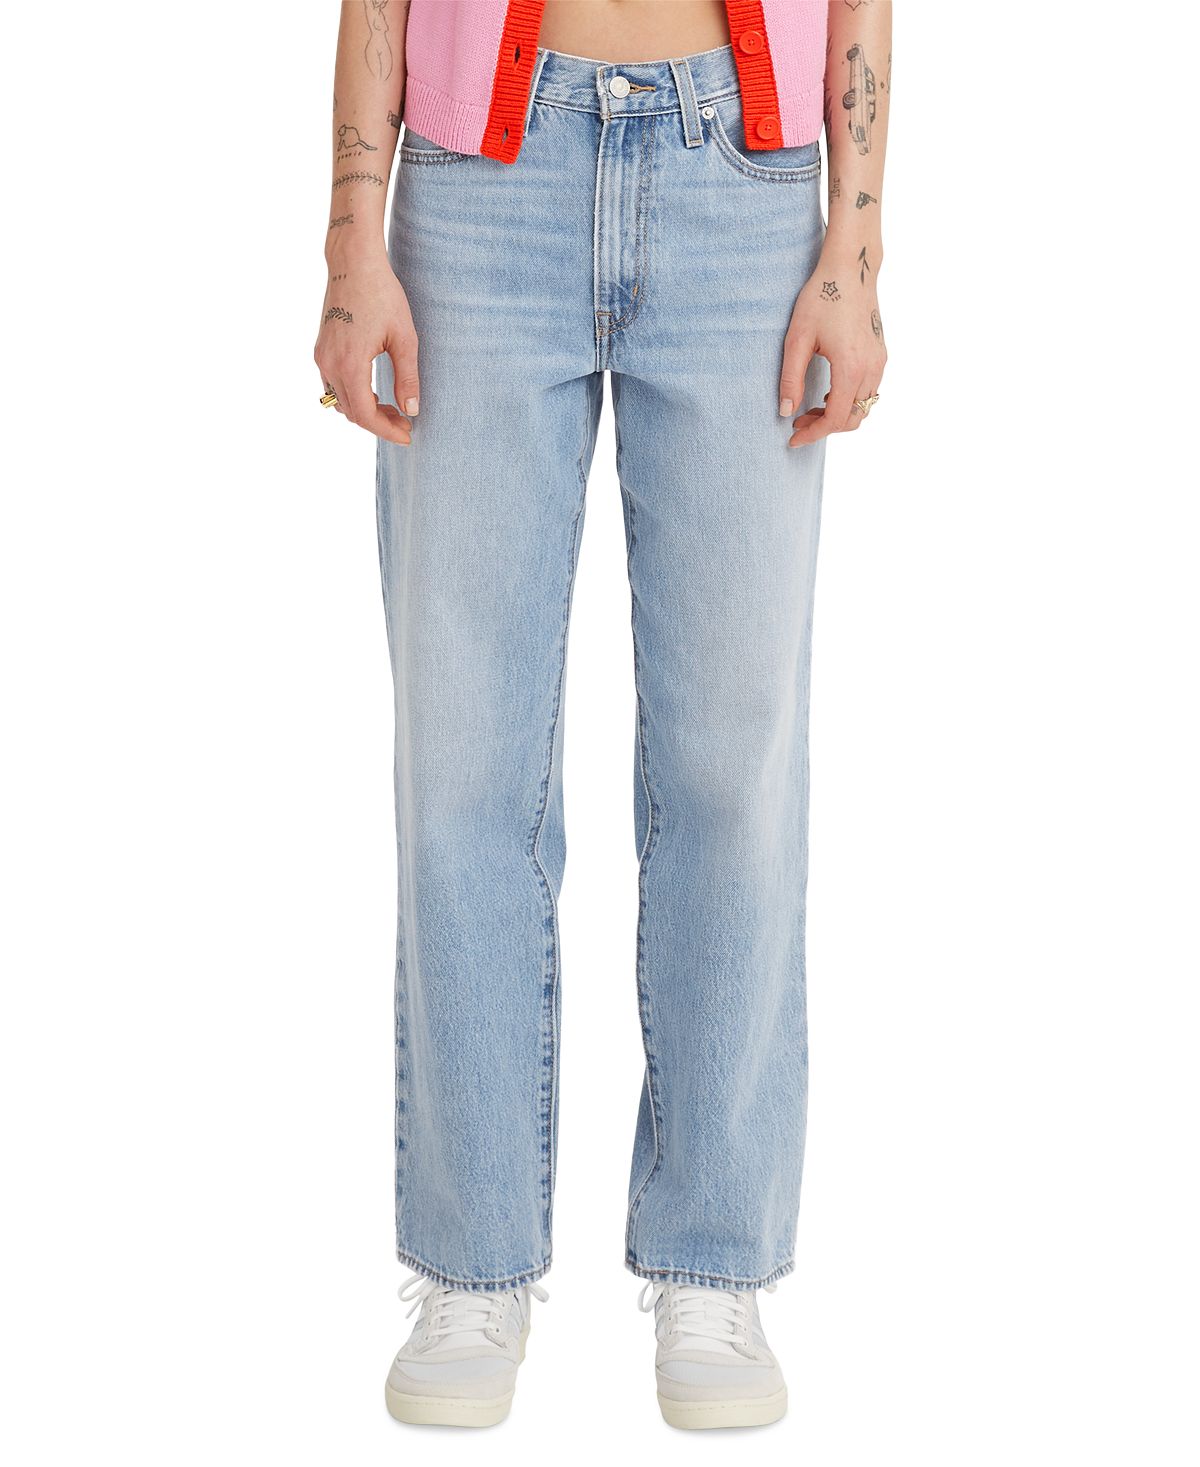 Женские мешковатые джинсы со средней посадкой 94 из хлопка Levi's